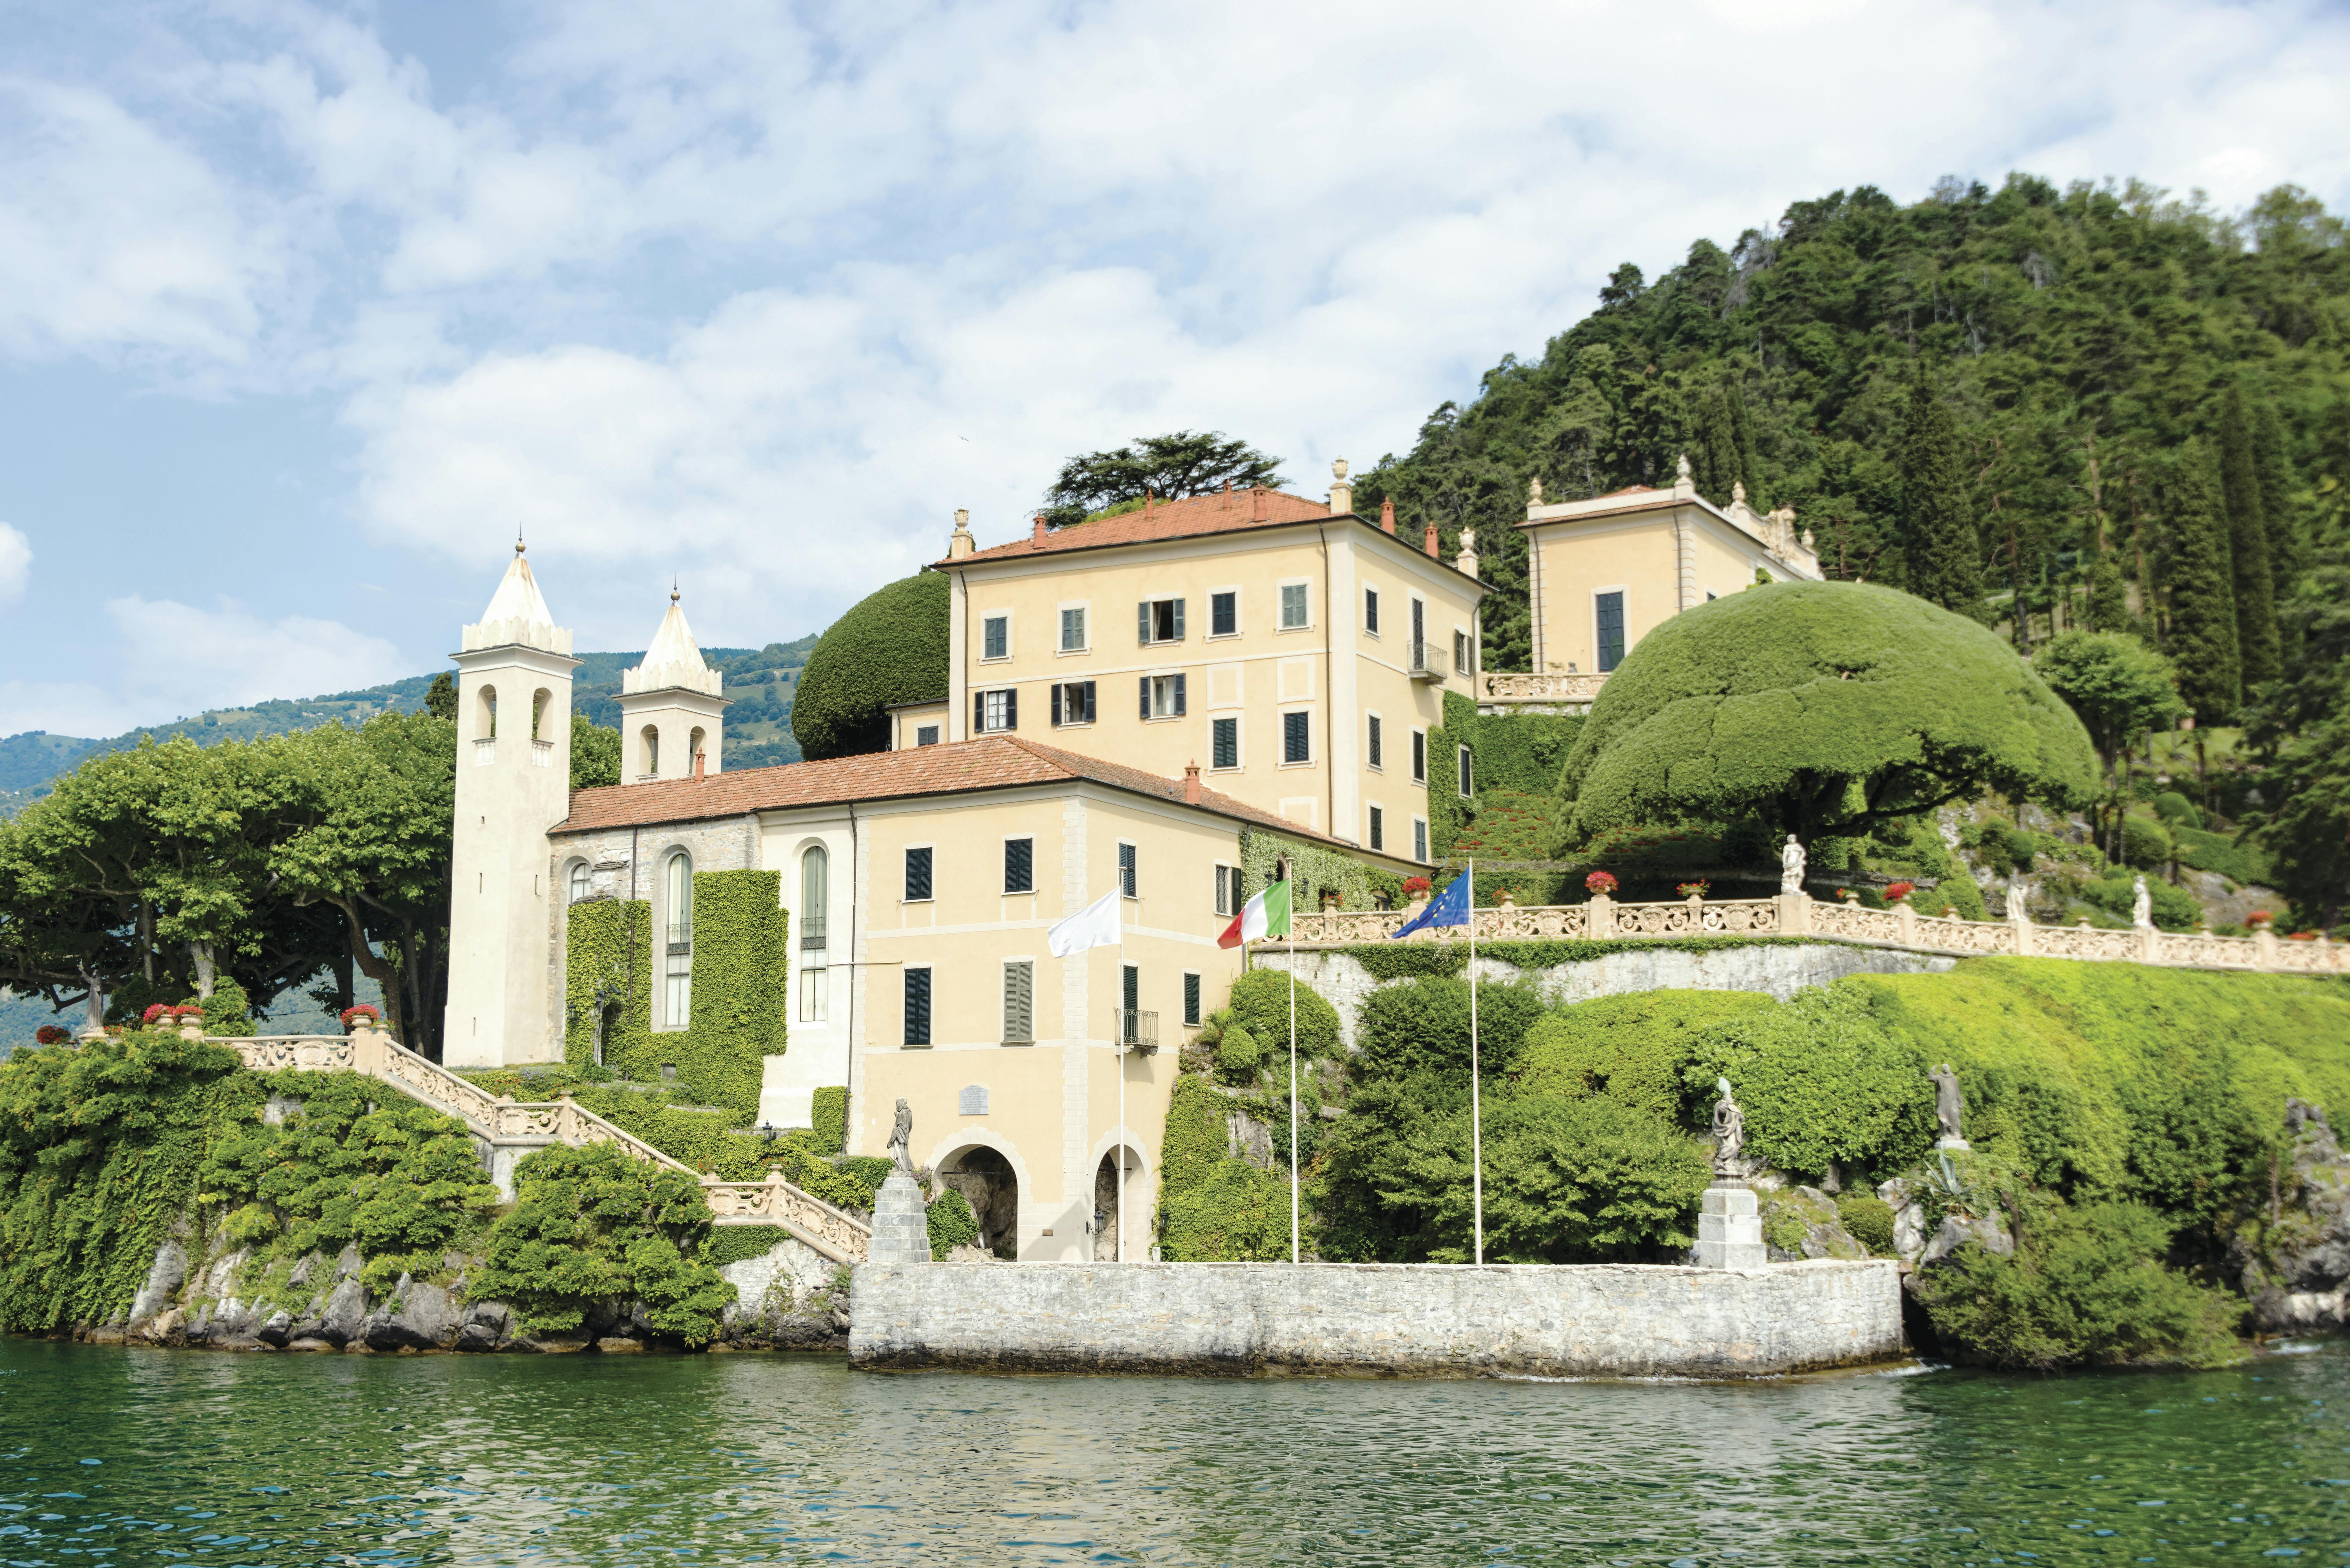 Villa del Balbianello Boat Tour and Visit